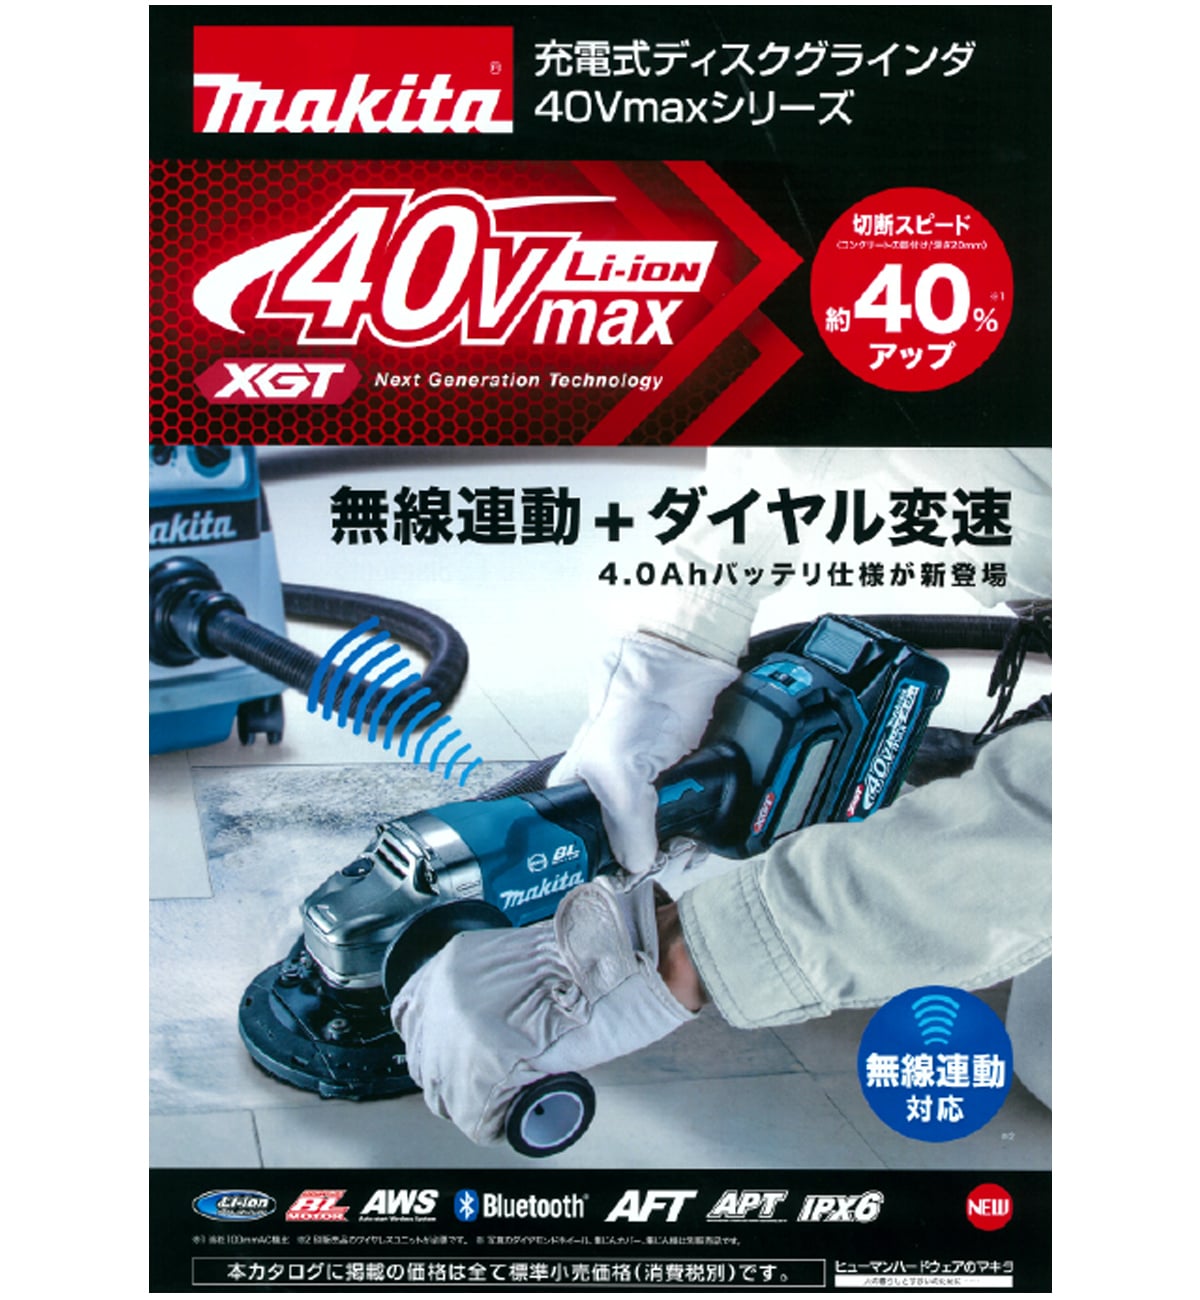 マキタ GA019GRMX 40Vmax充電式ディスクグラインダ100mm ウエダ金物